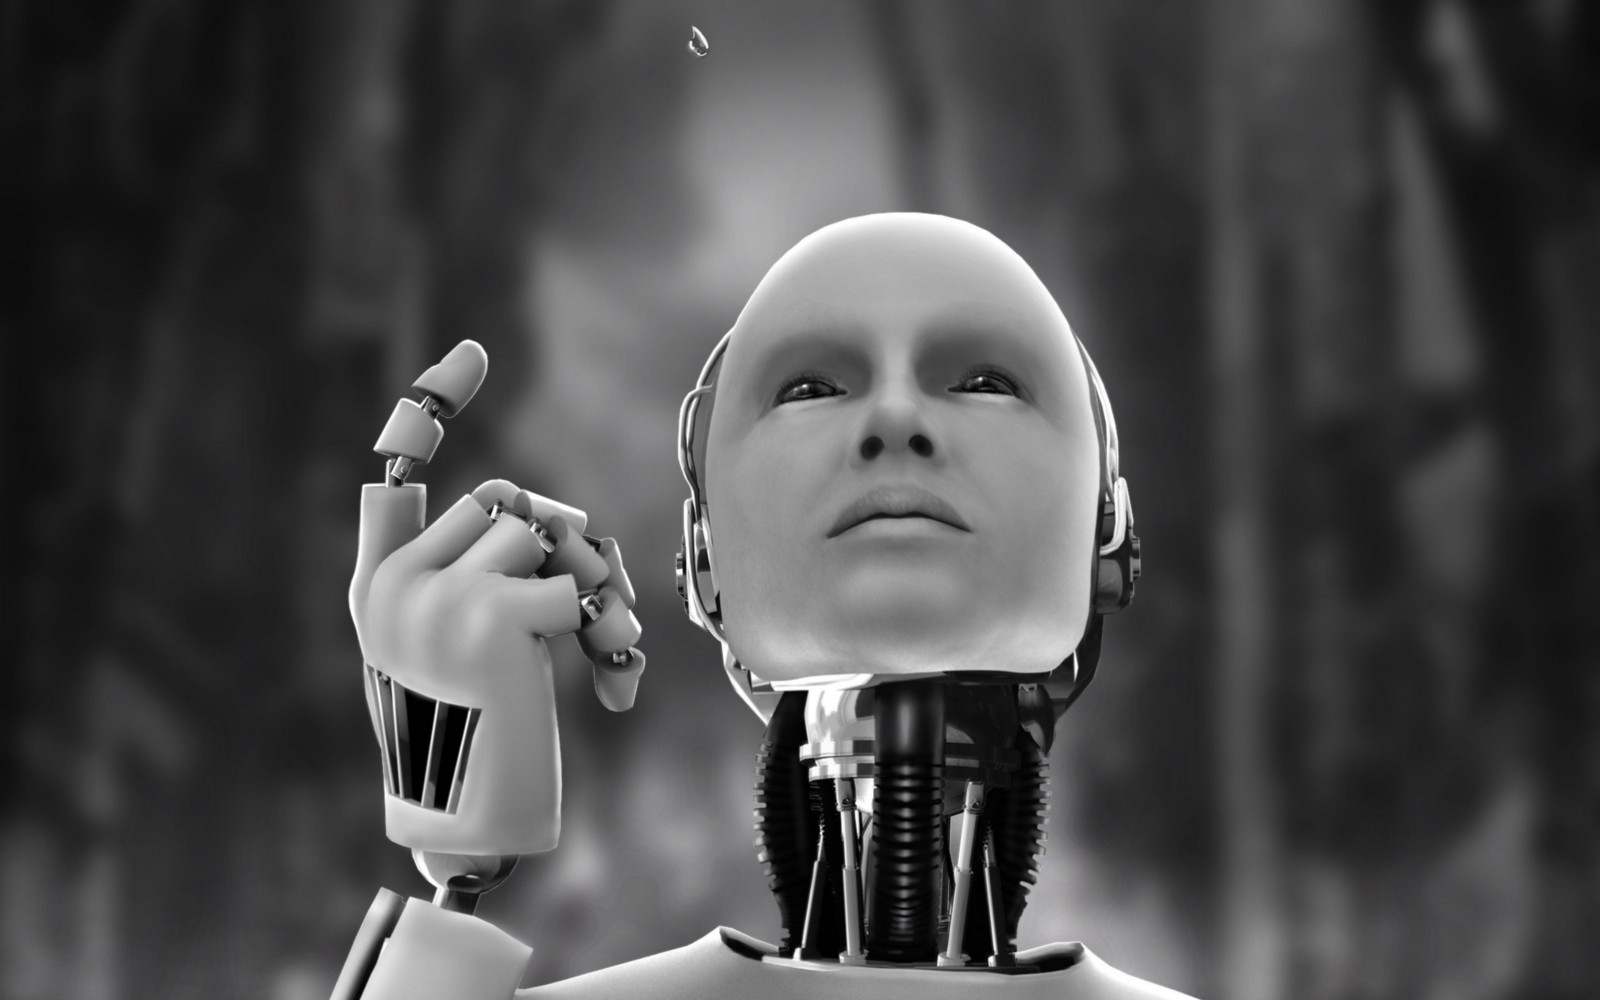 Kto będzie właścicielem robotów, ten będzie władał światem - czyli o 3 prawach robonomiki